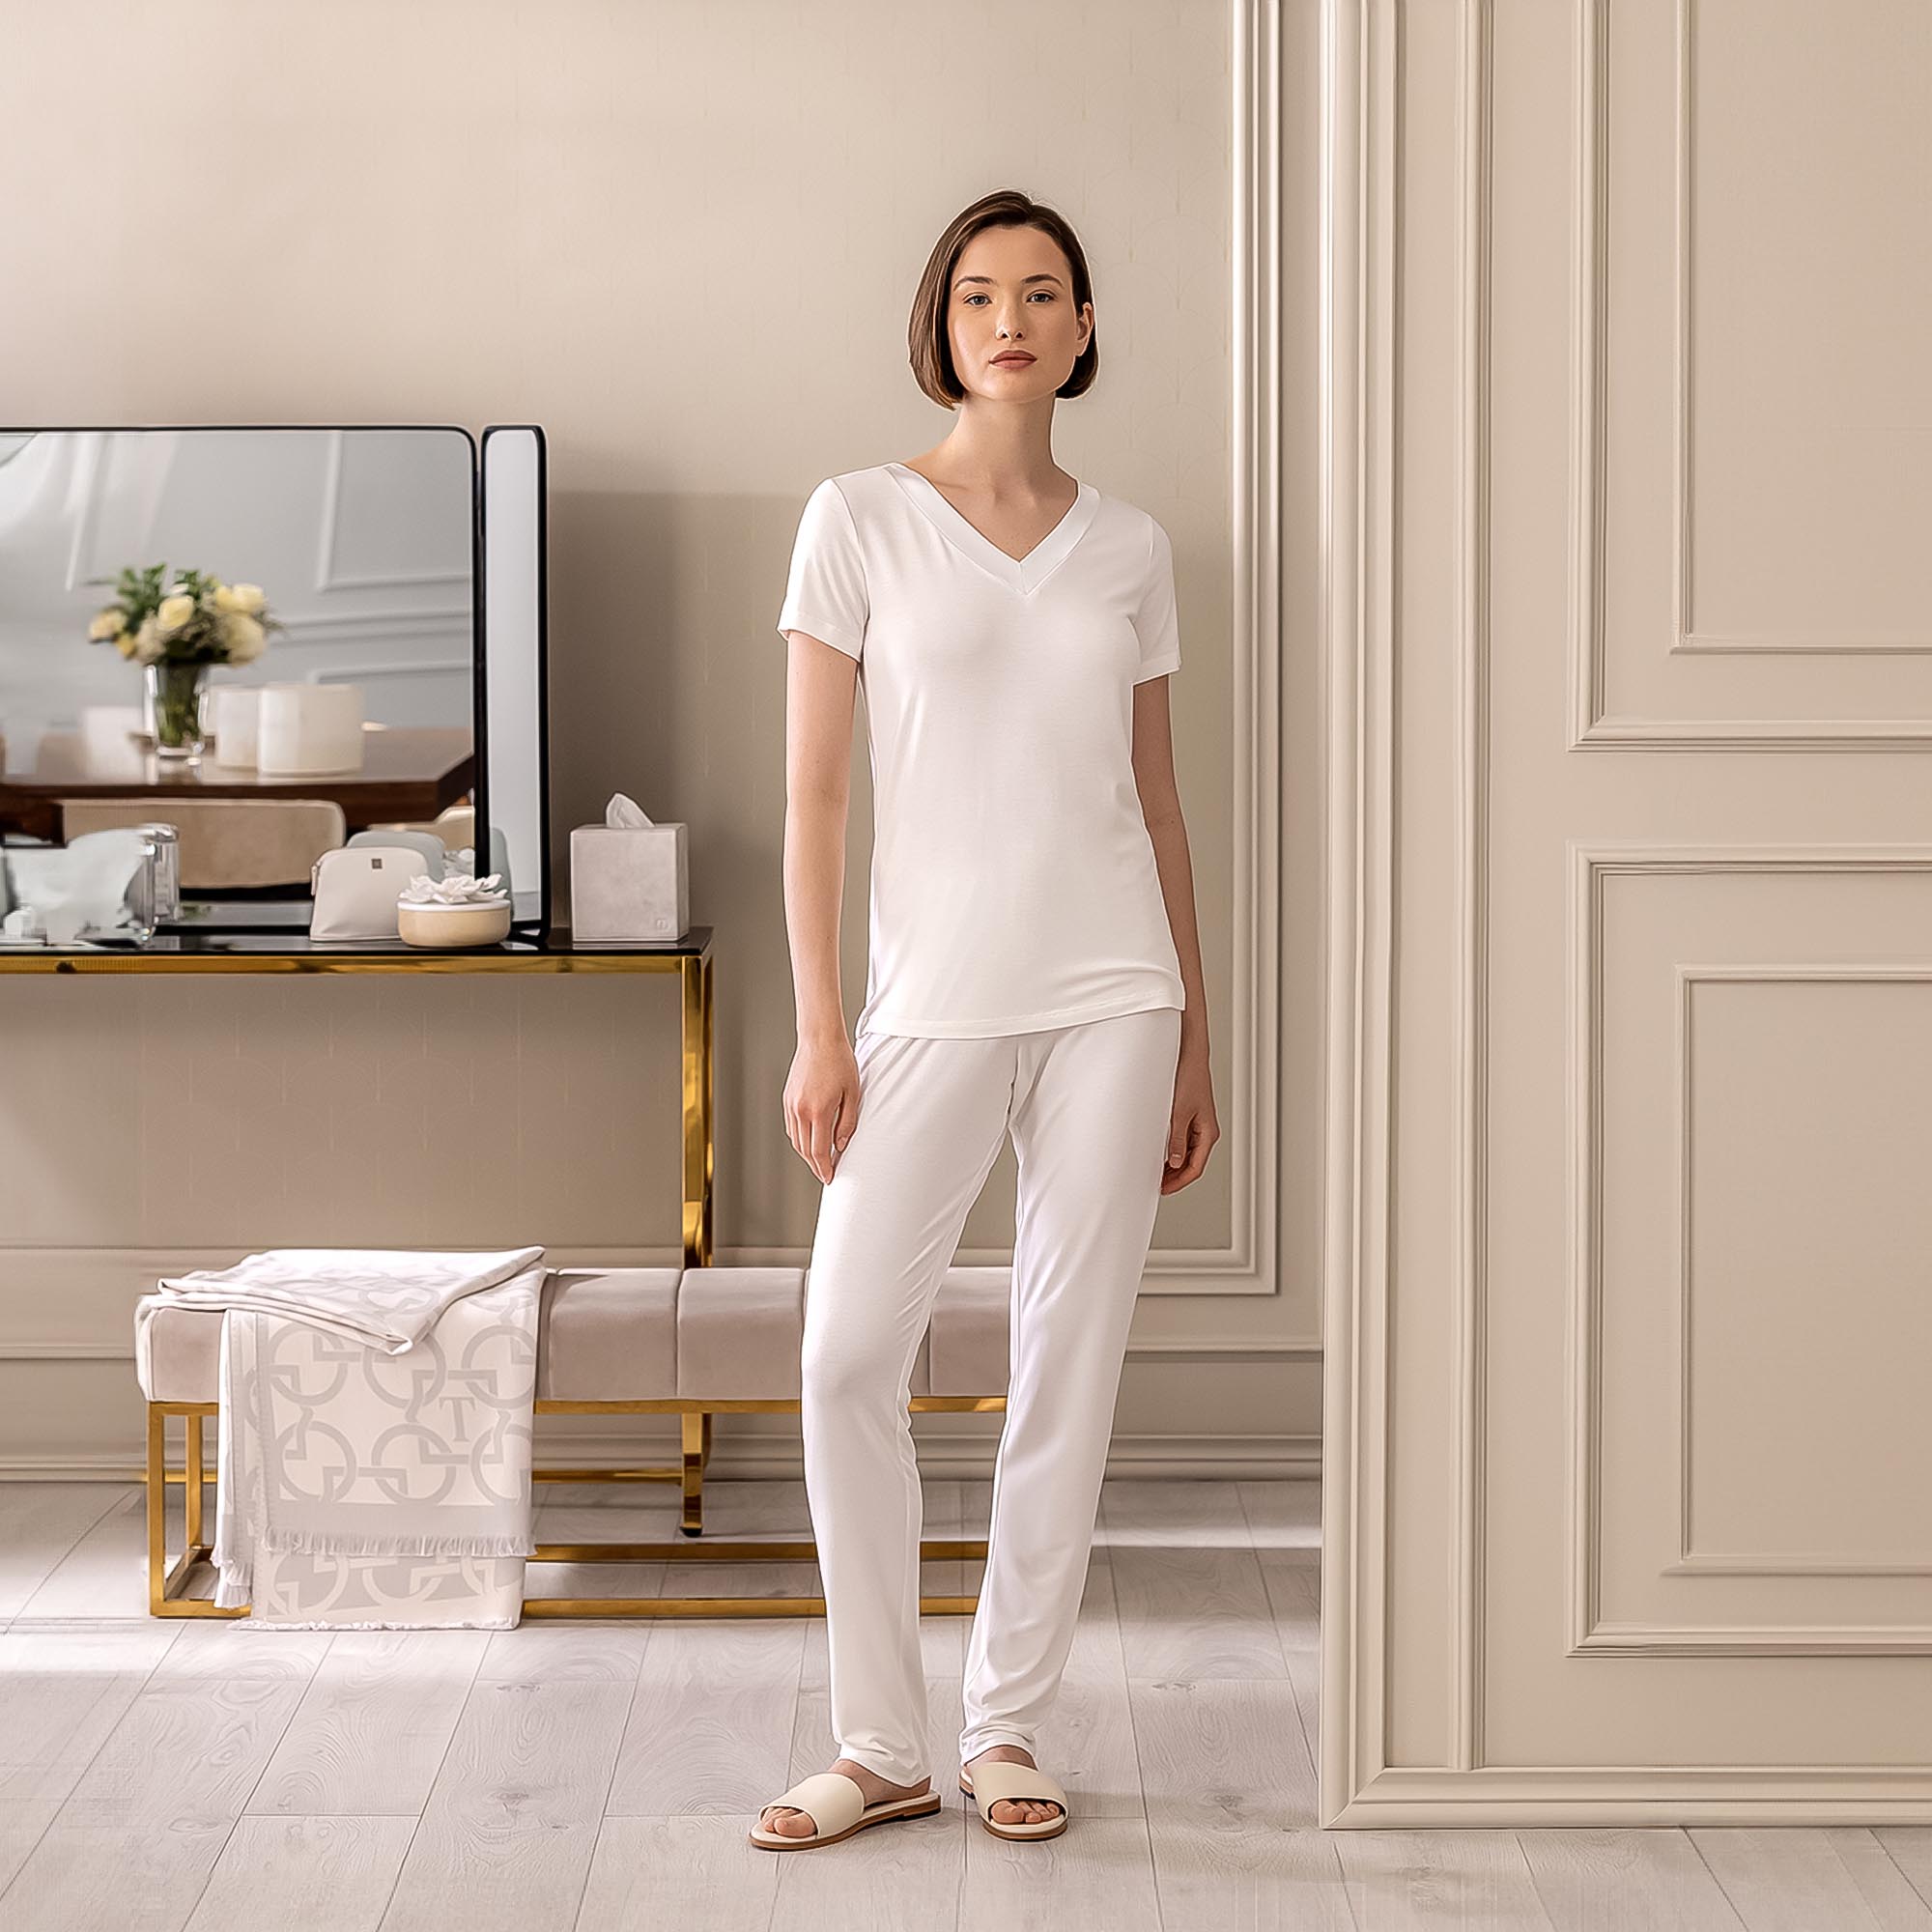 Пижама Togas Ингелла белая женская XL(50) 2 предмета, цвет белый, размер XL(50) - фото 4